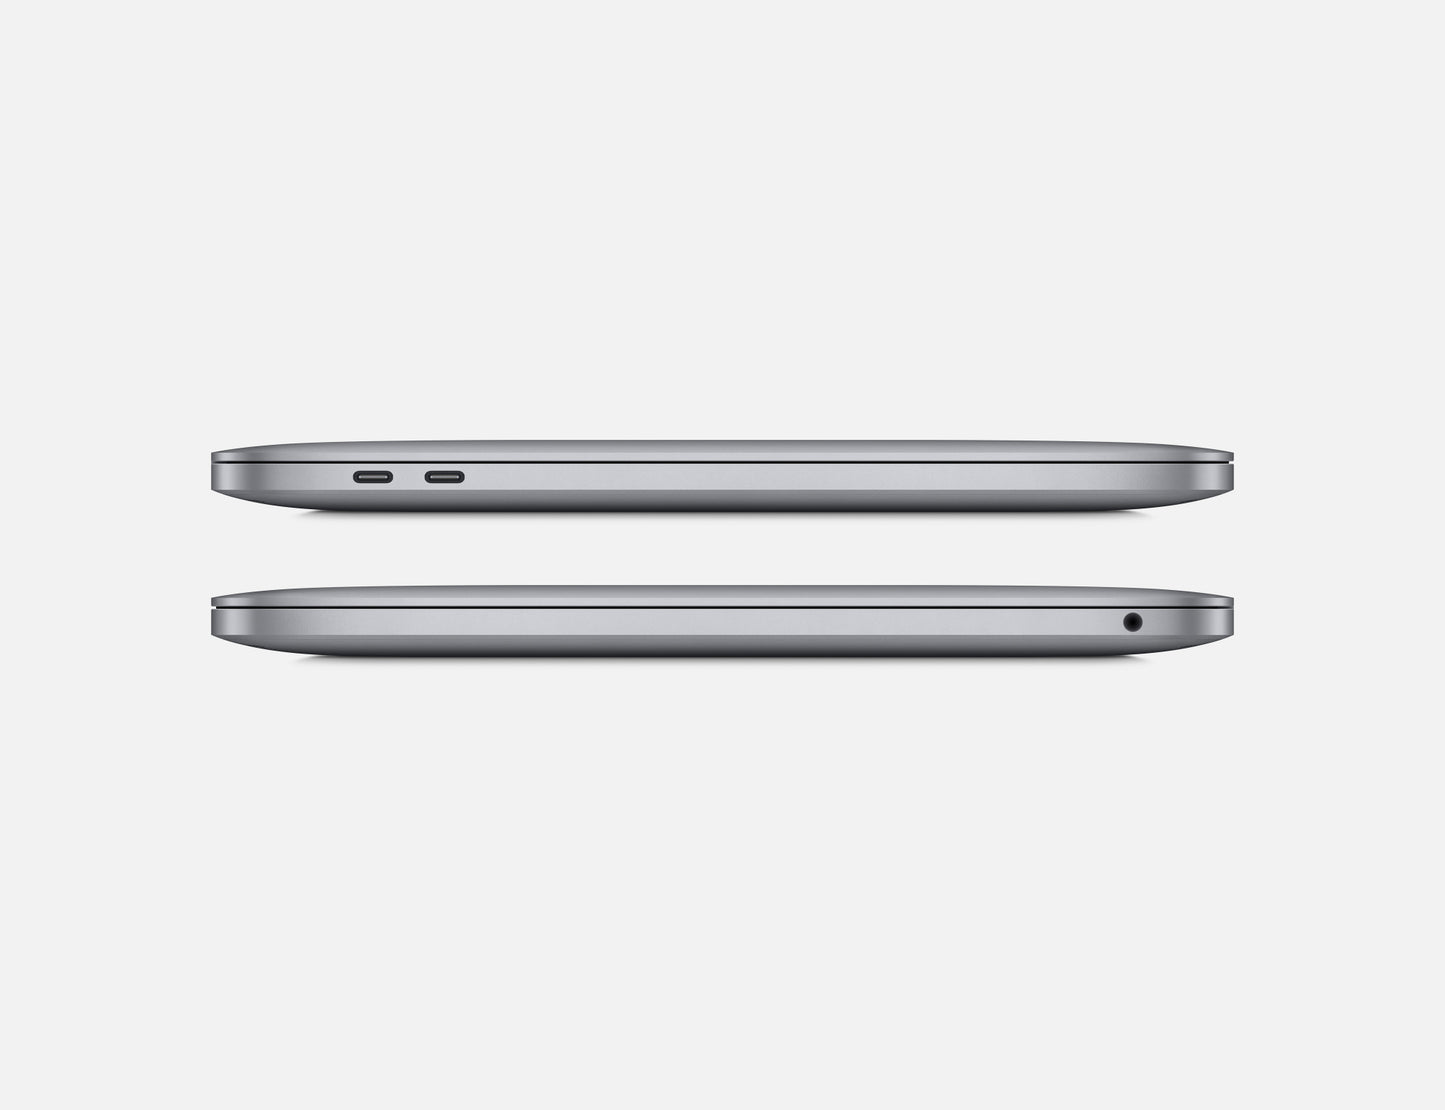 MacBook Pro 13-inch M2 ماك بوك برو ابل